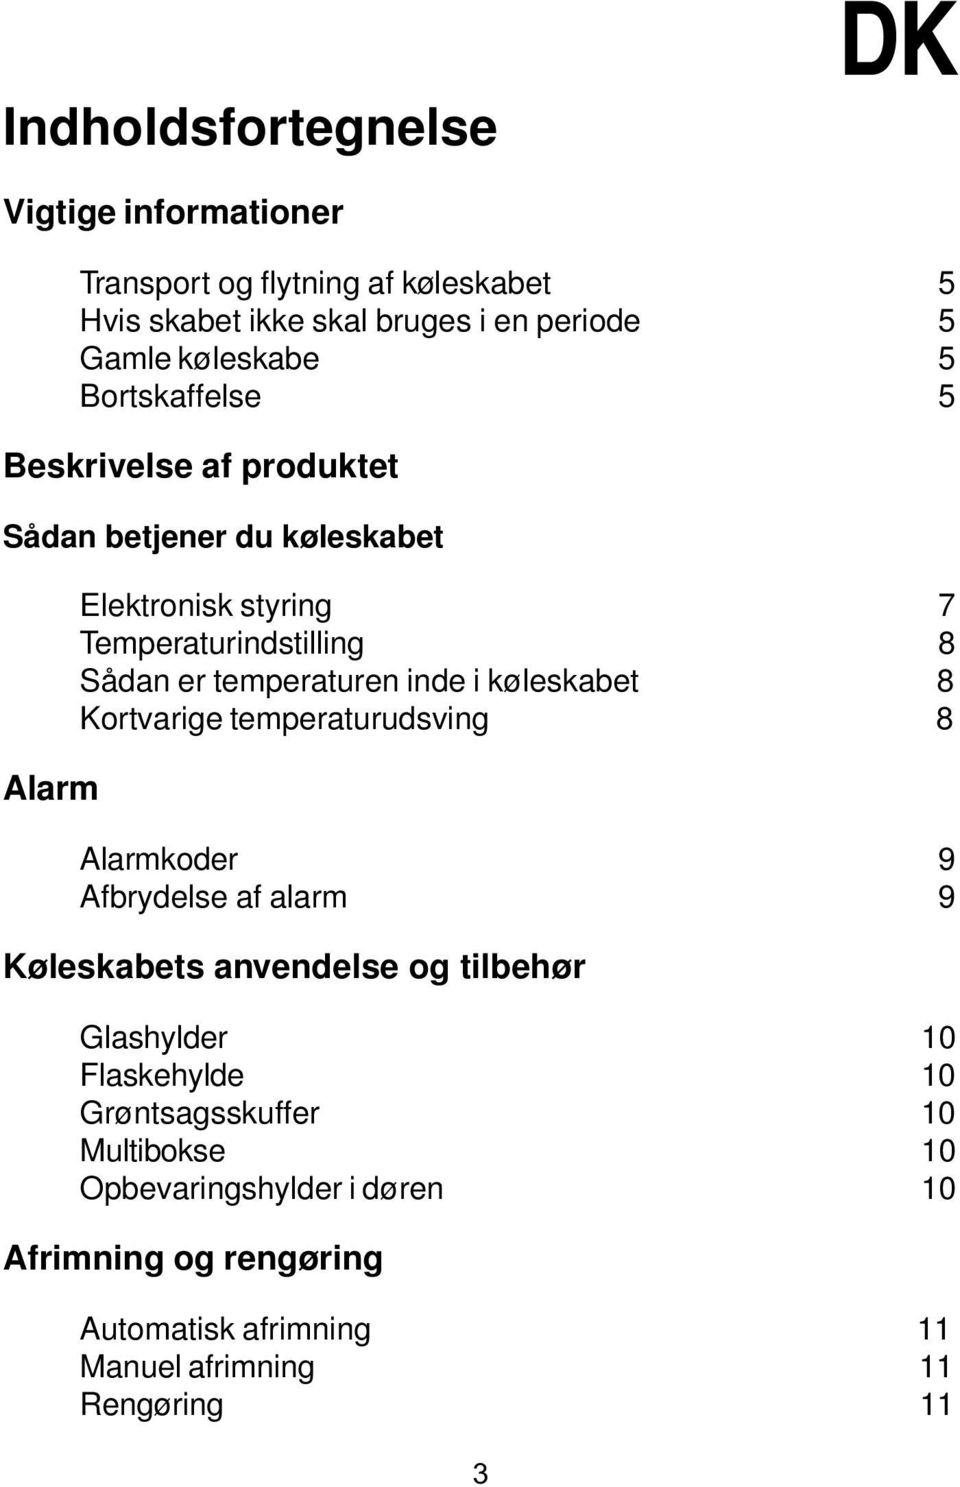 inde i køleskabet 8 Kortvarige temperaturudsving 8 Alarmkoder 9 Afbrydelse af alarm 9 Køleskabets anvendelse og tilbehør Glashylder 10